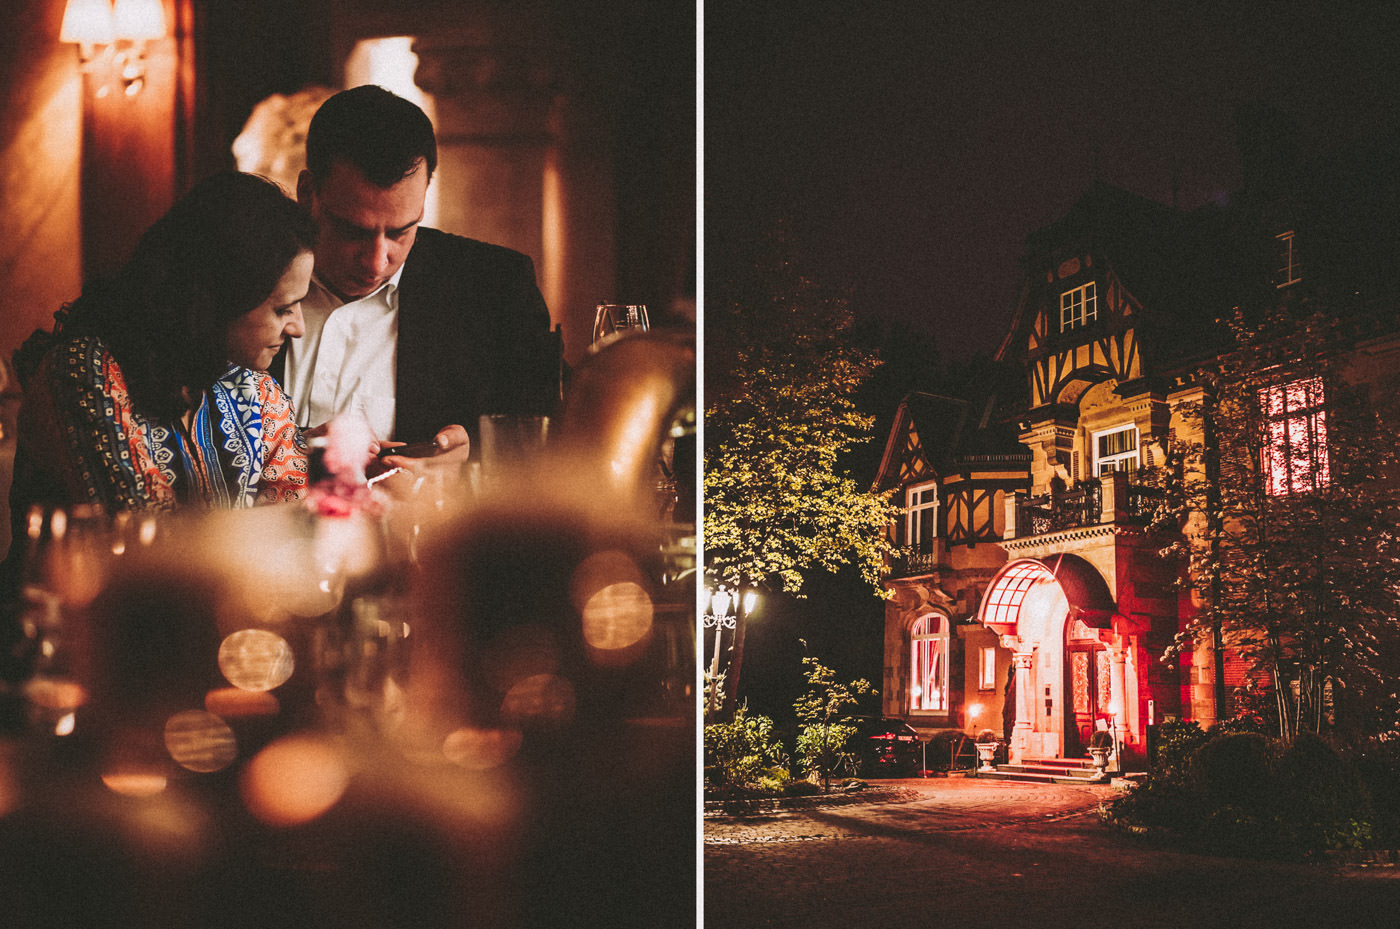 Wedding at Villa Rothschild, Königstein, Frankfurt - outdoor wedding in the park and party in the bar